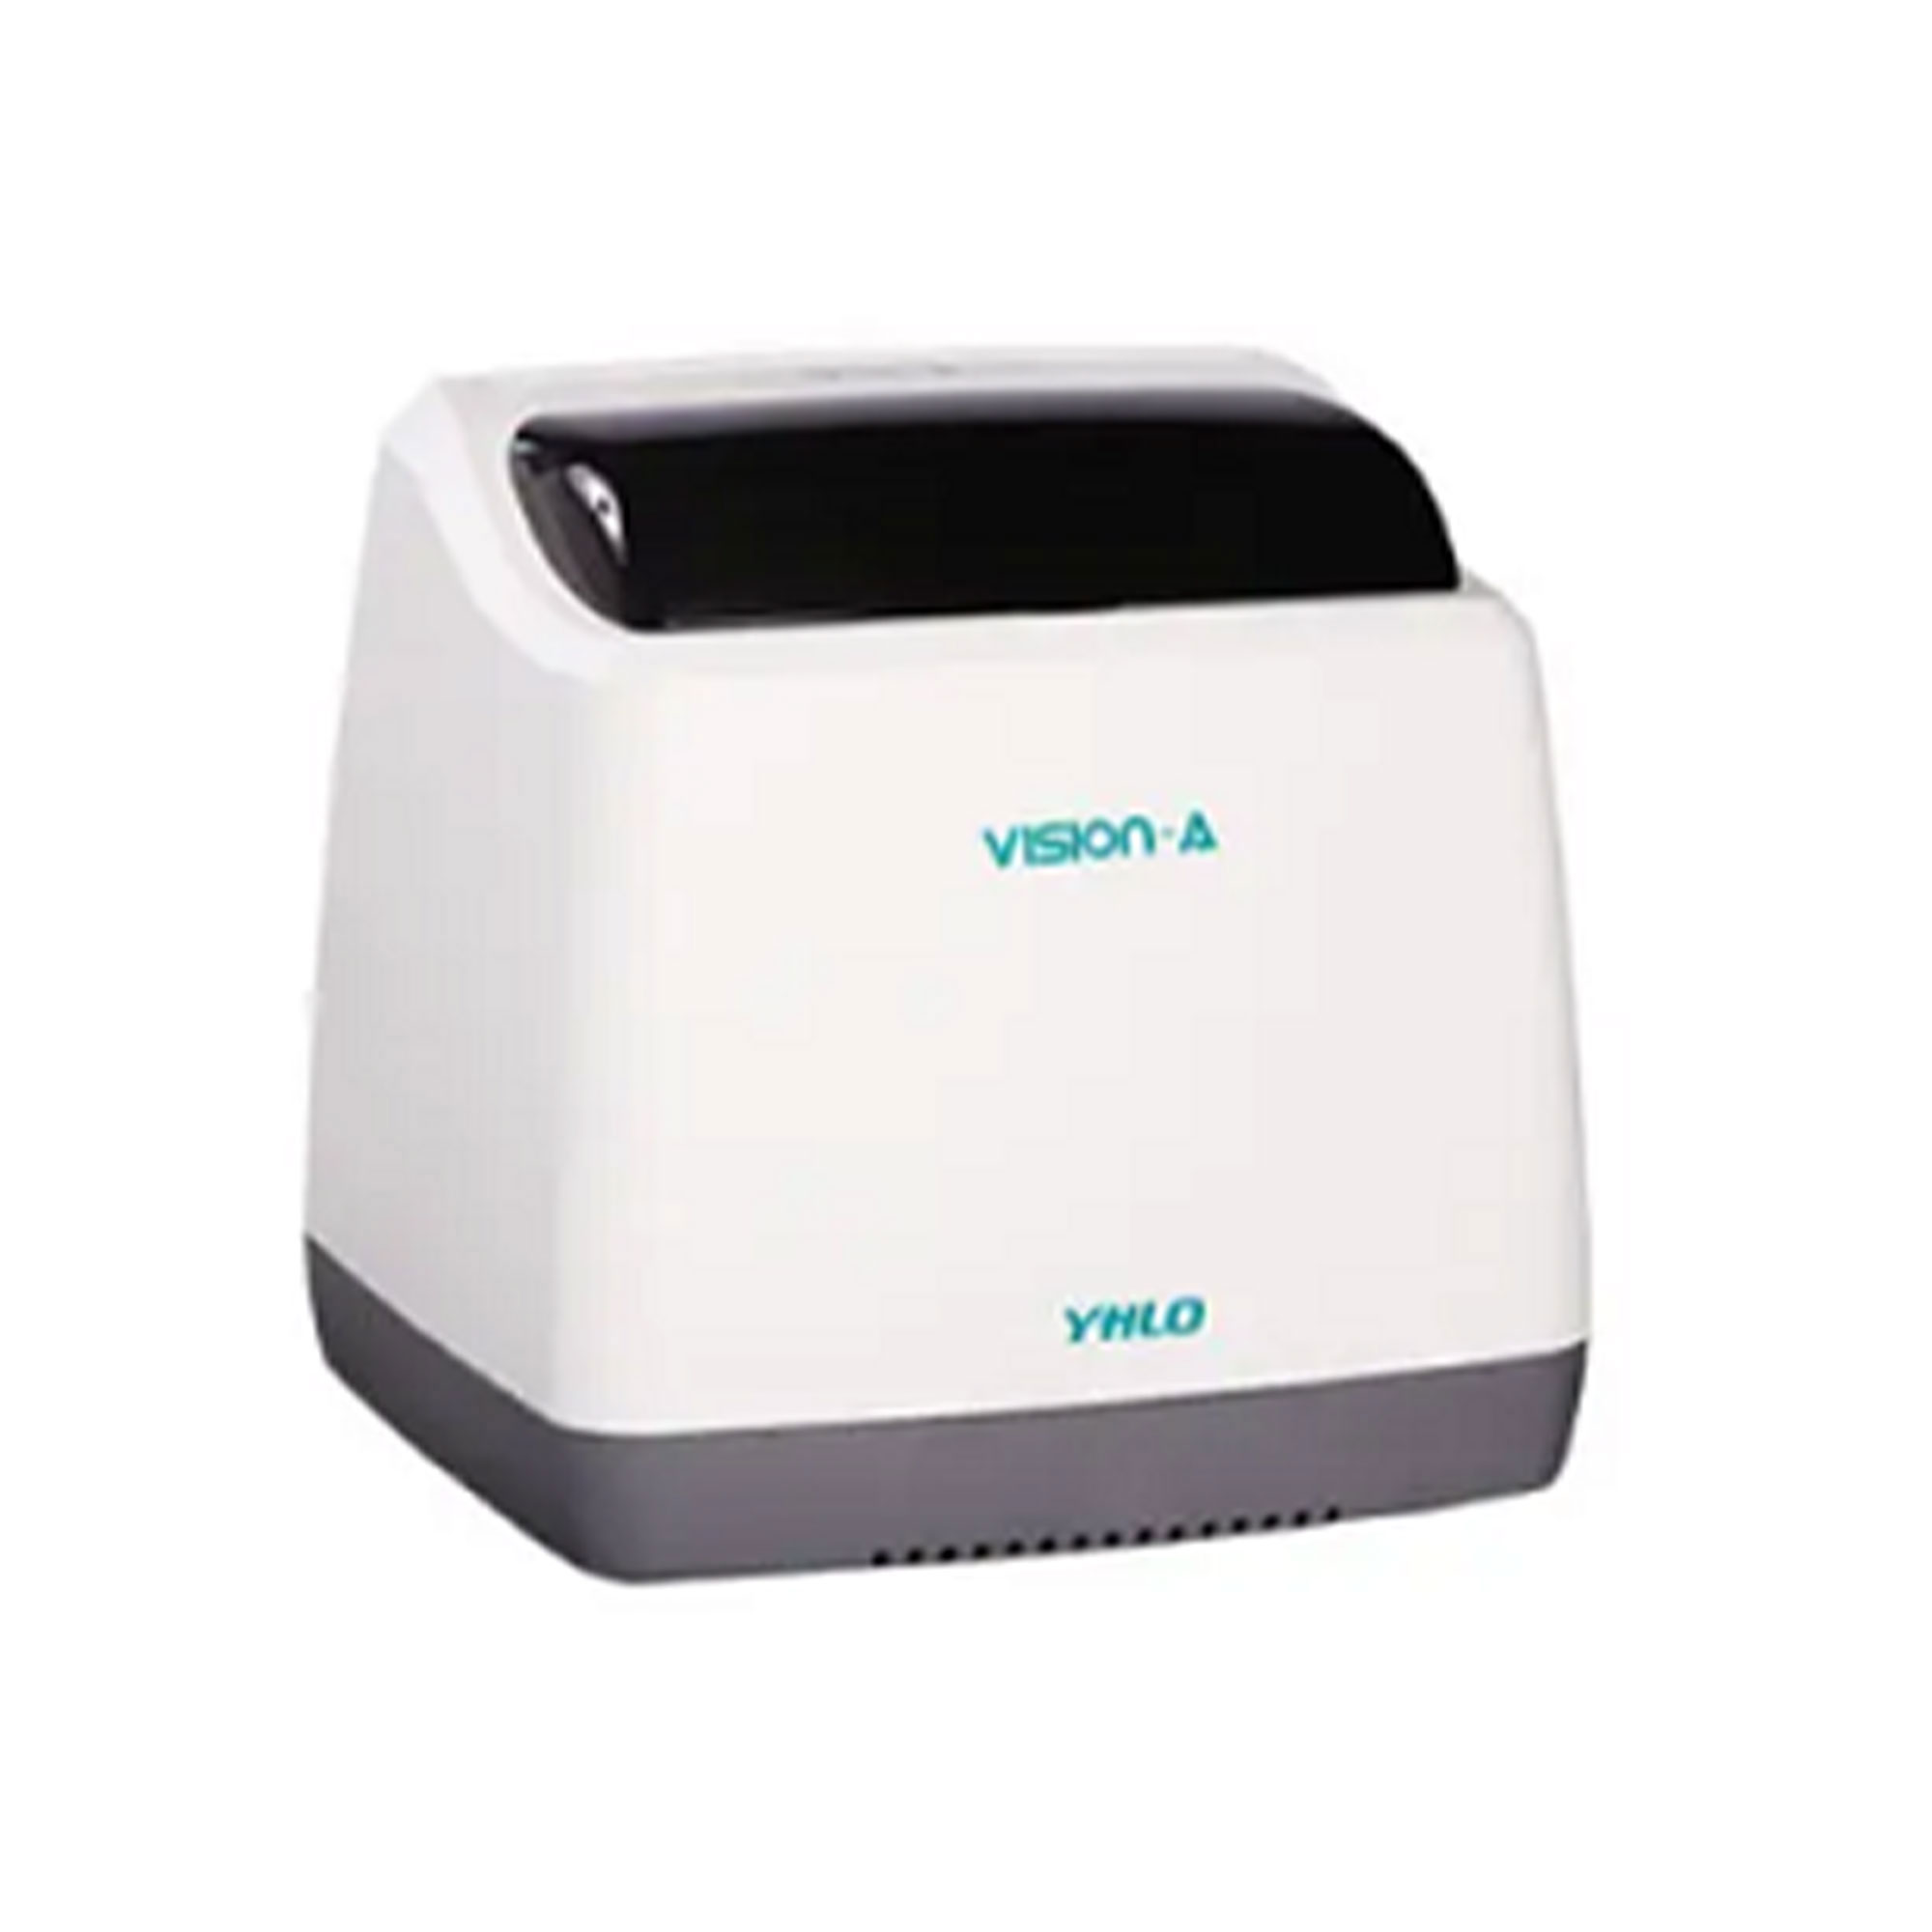 دستگاه سدیمان  آنالایزر - Vision ESR Analyzer 8 - VHLO - دستگاه - هماتولوژی و بانک خون - آریا تشخیص پارس